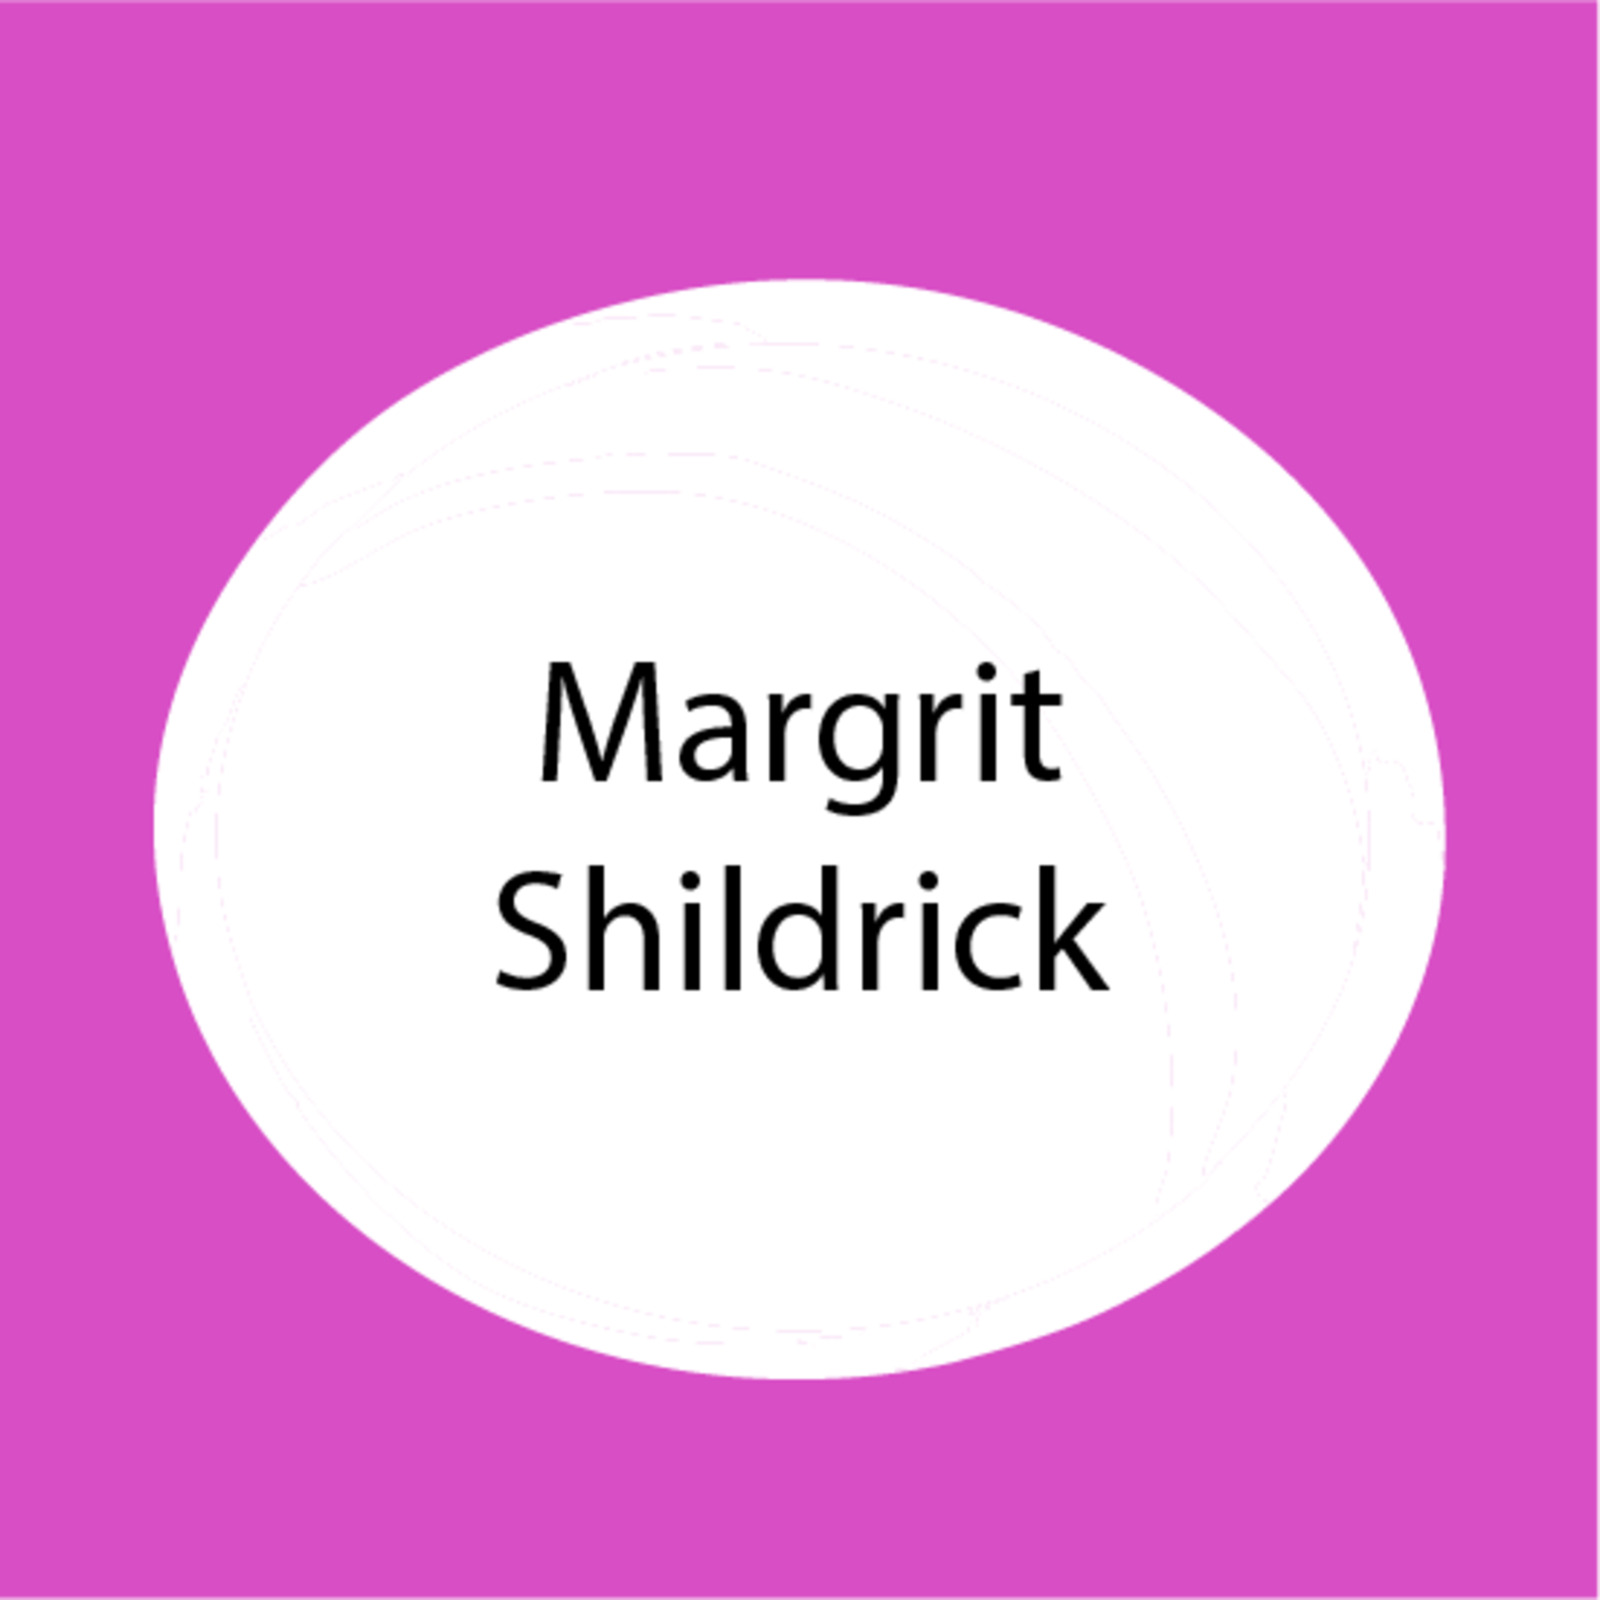 Margrit Shildrick